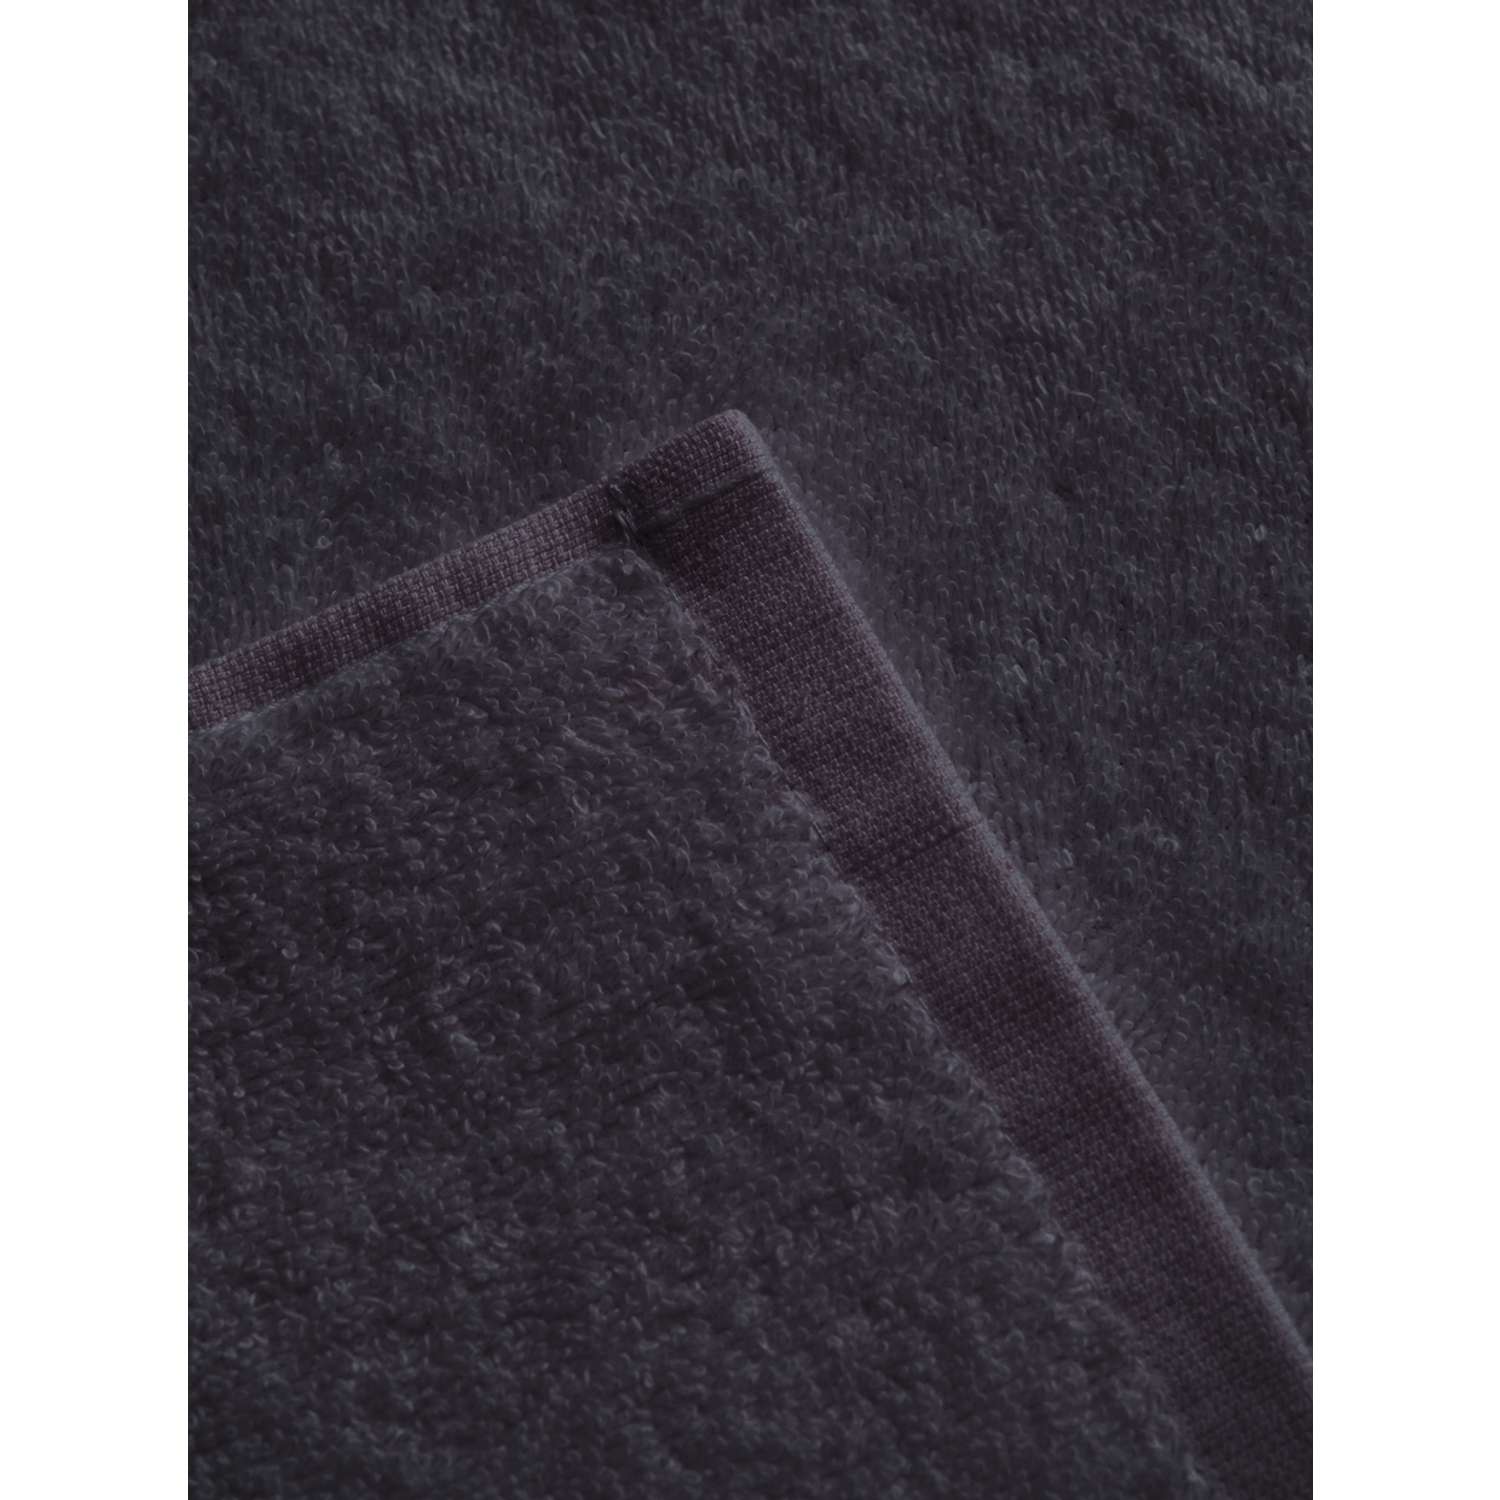 Полотенце Frutto Rosso Банное махровое серый 70*140 - фото 7